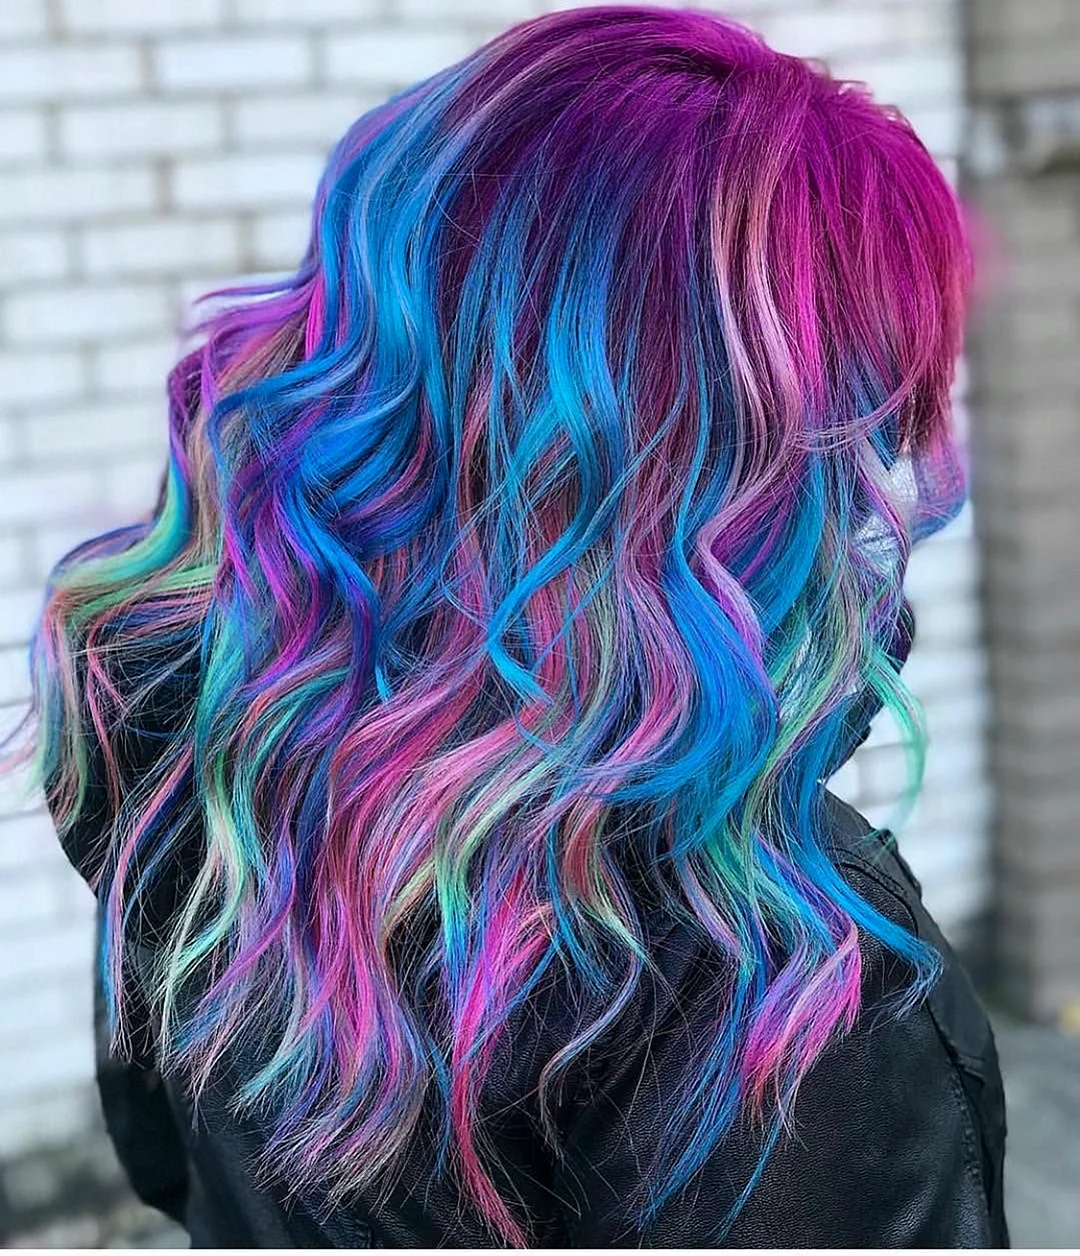 Волосы красивые цвета радуги